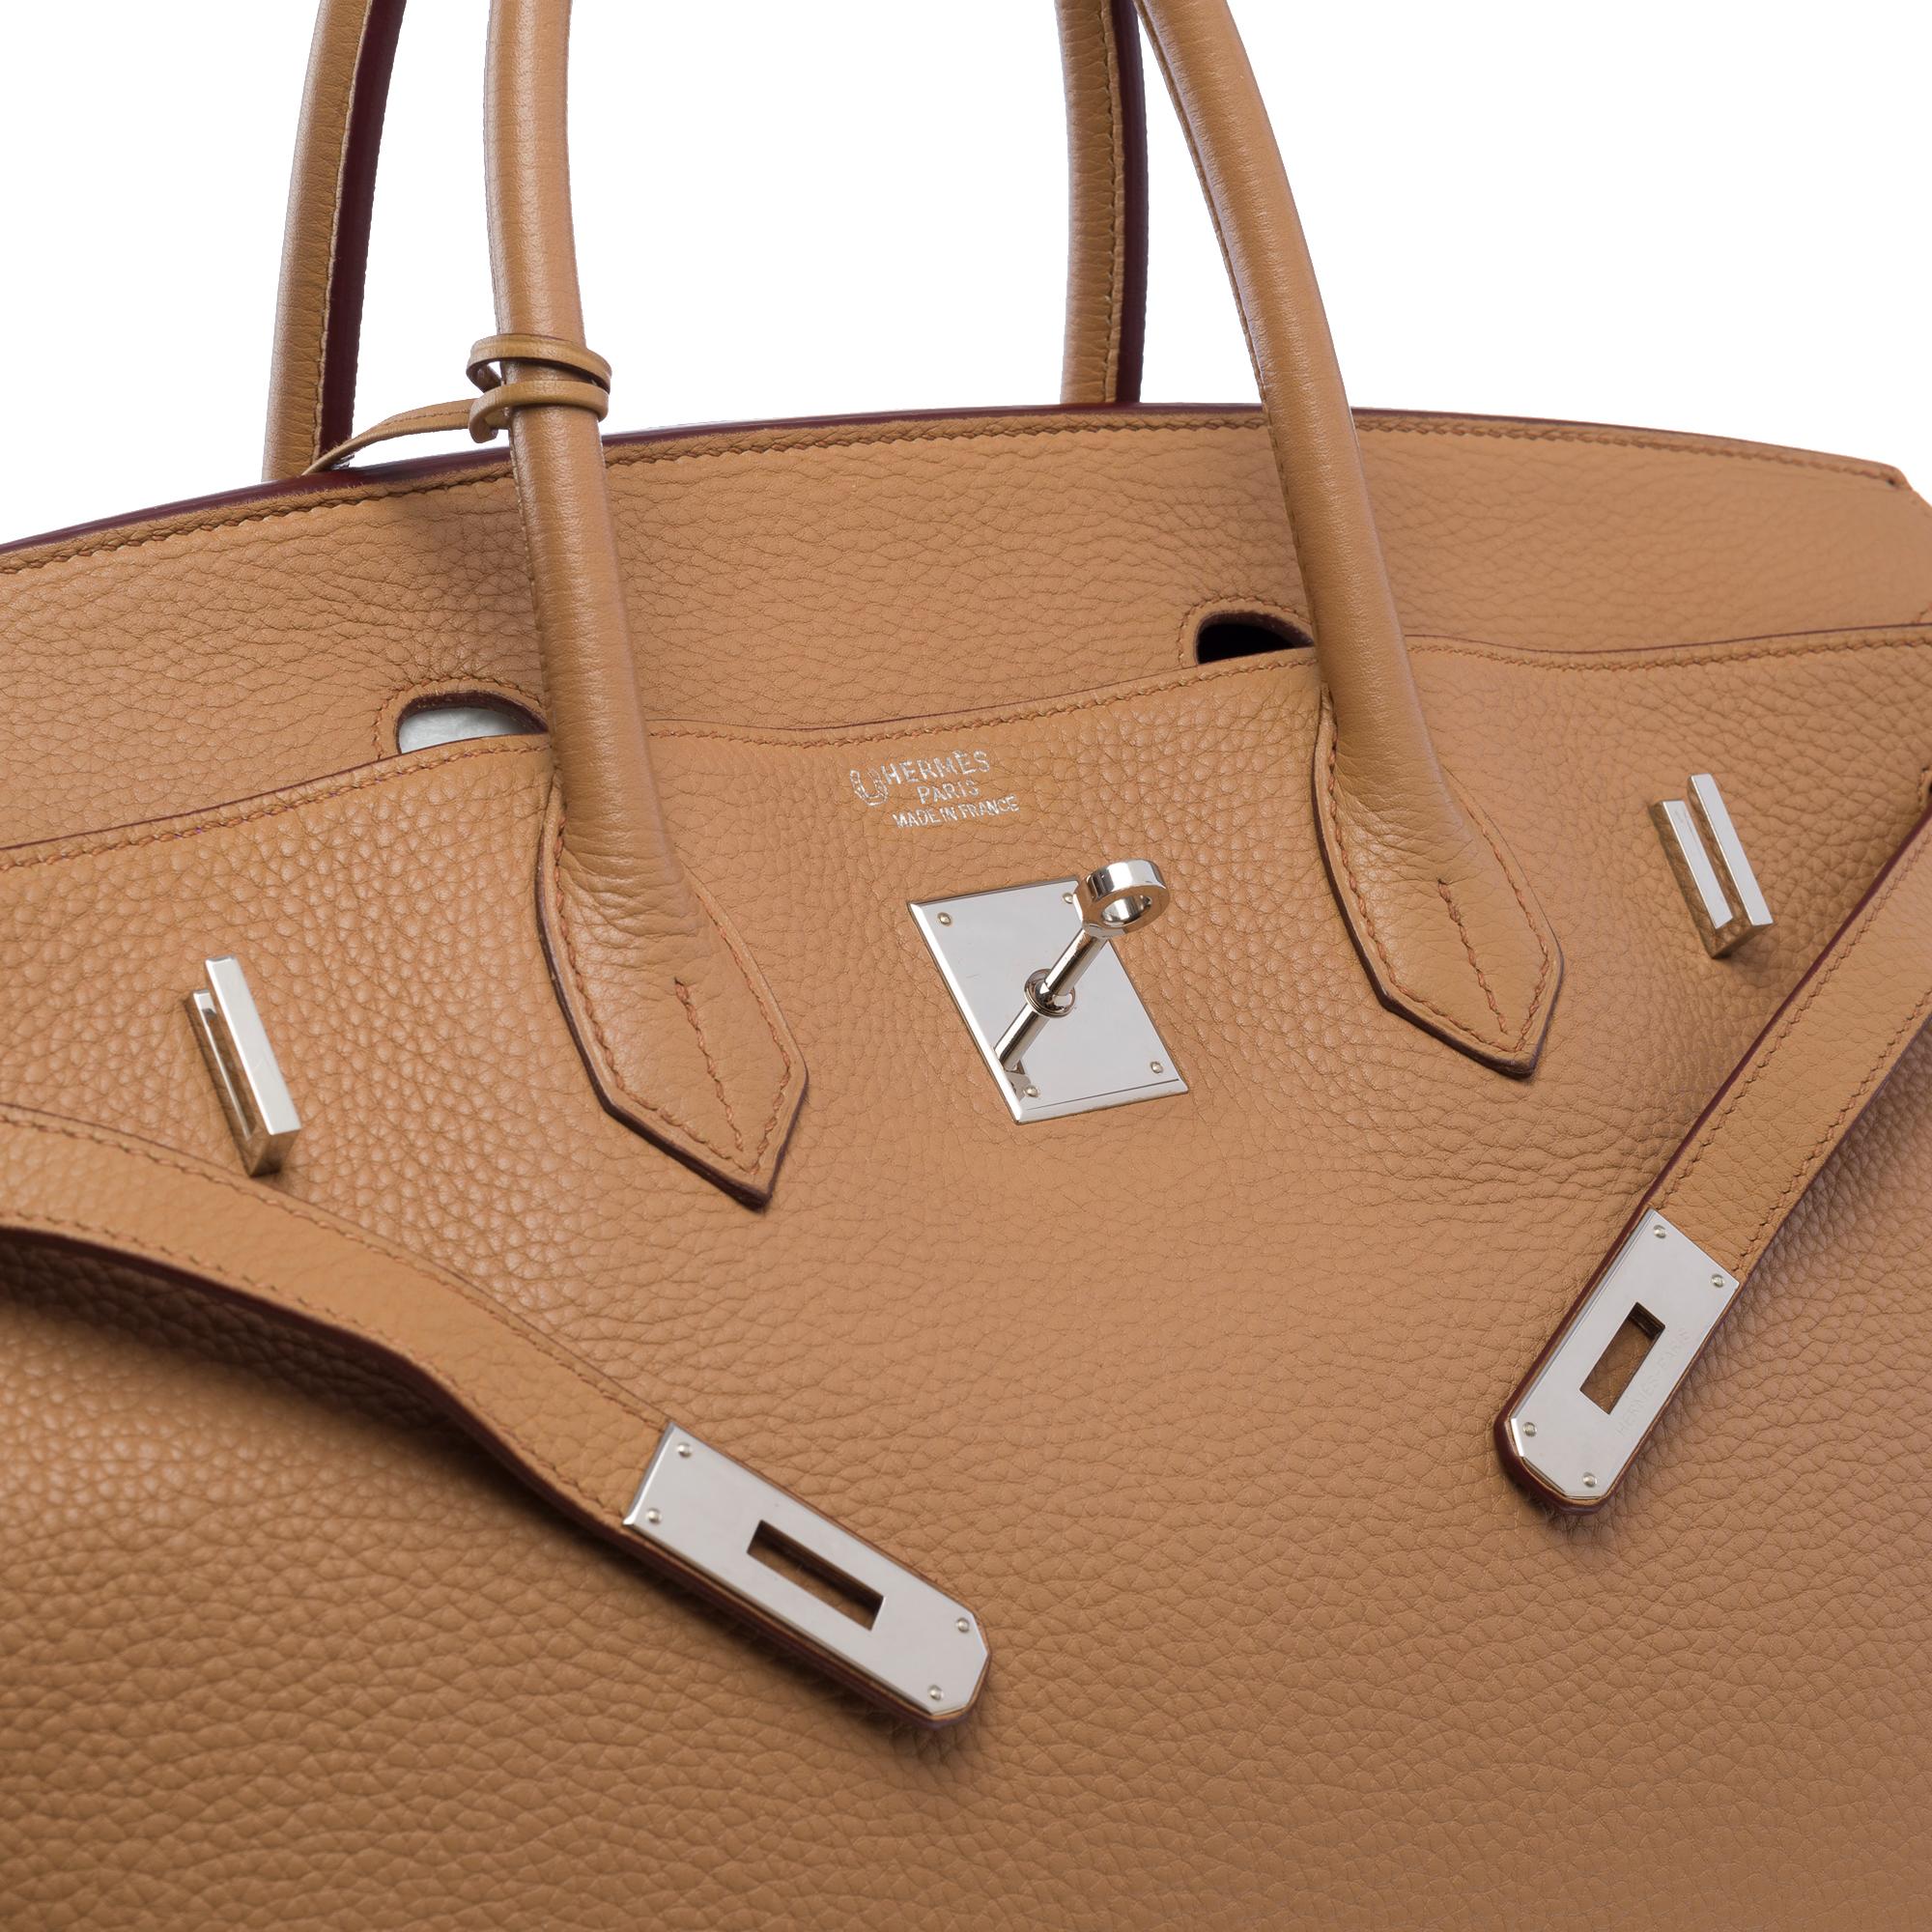 Hermes Birkin 40 handbag in Tabac Togo leather, SHW For Sale 3